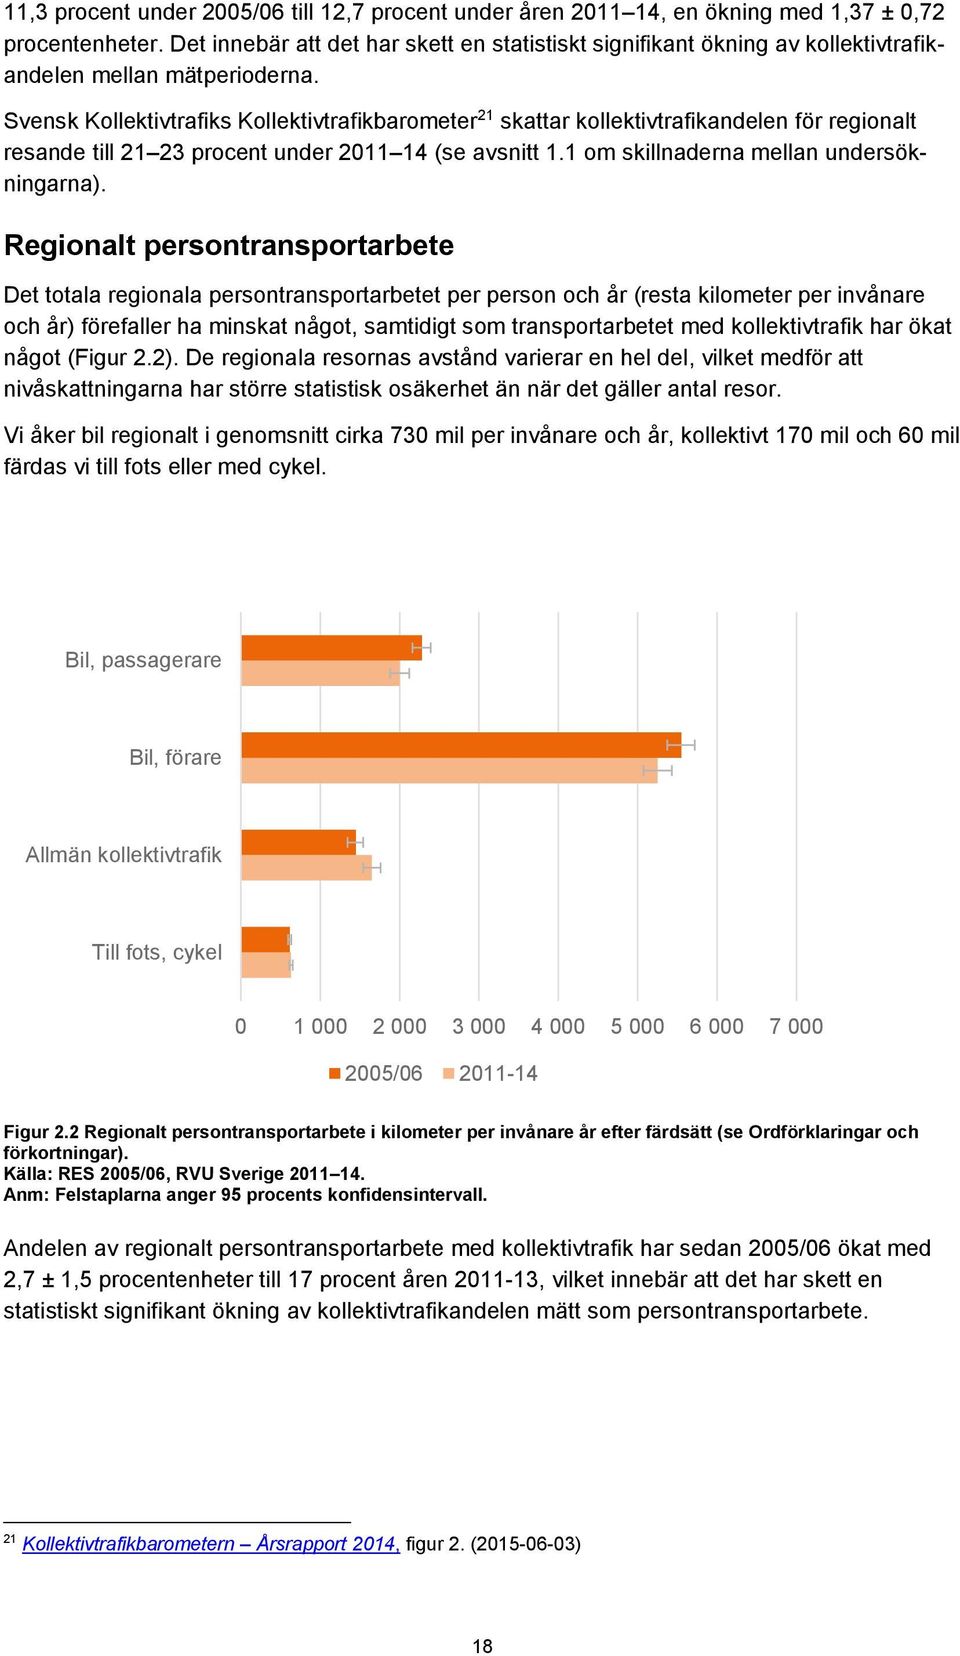 Svensk Kollektivtrafiks Kollektivtrafikbarometer 21 skattar kollektivtrafikandelen för regionalt resande till 21 23 procent under 2011 14 (se avsnitt 1.1 om skillnaderna mellan undersökningarna).